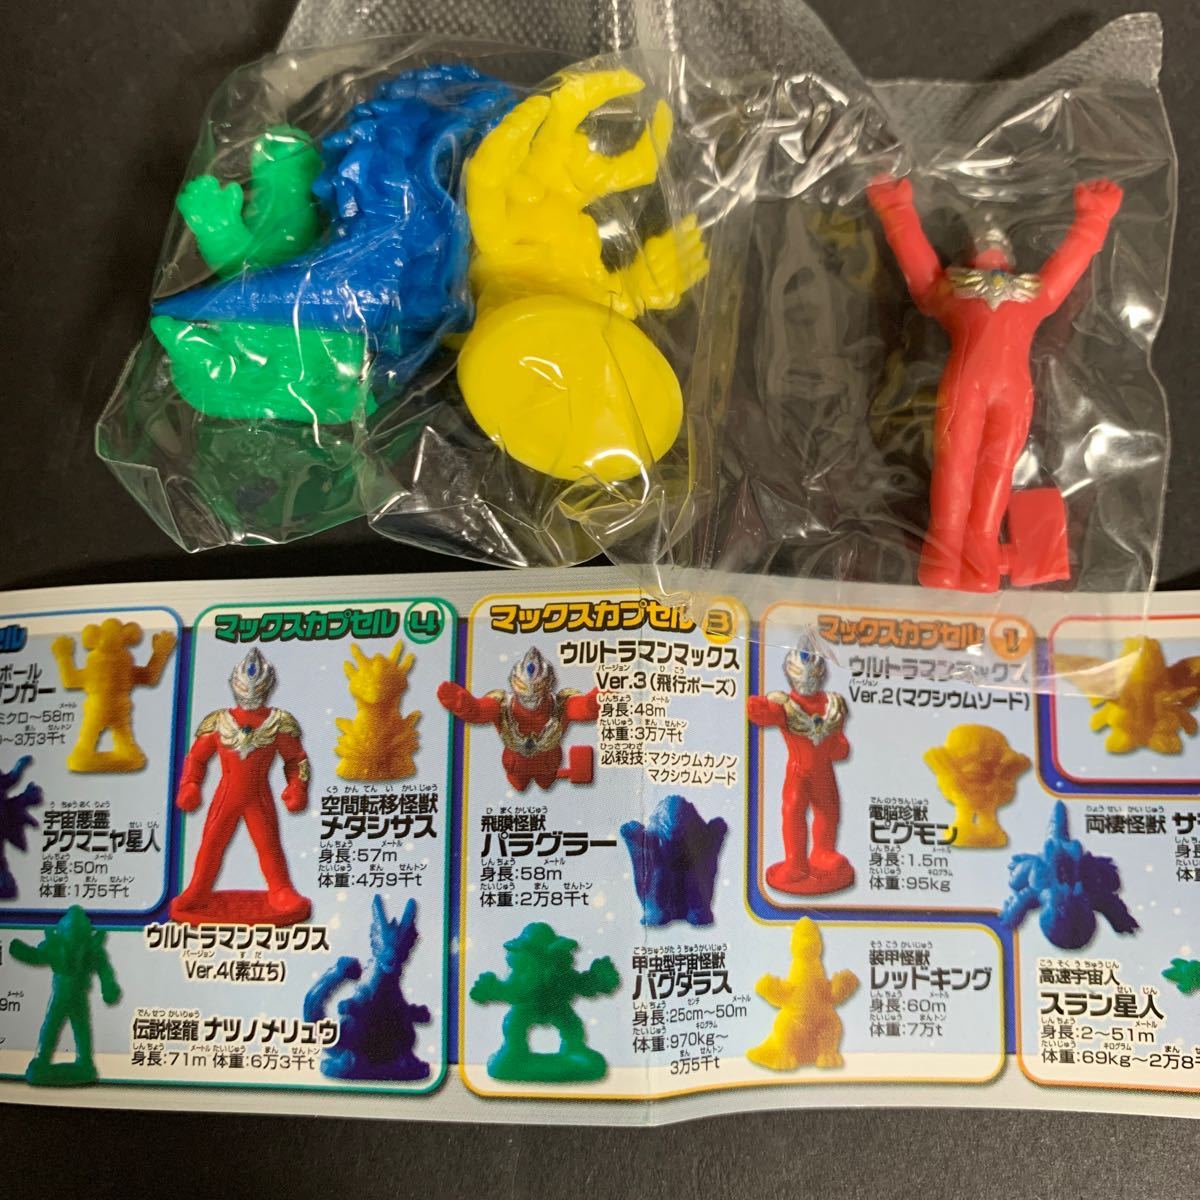  все 6 вид (24 шт ) Ultra герой VS монстр армия . коллекция gashapon Capsule игрушка фигурка внутри пакет нераспечатанный Max Tiga Red King др. 